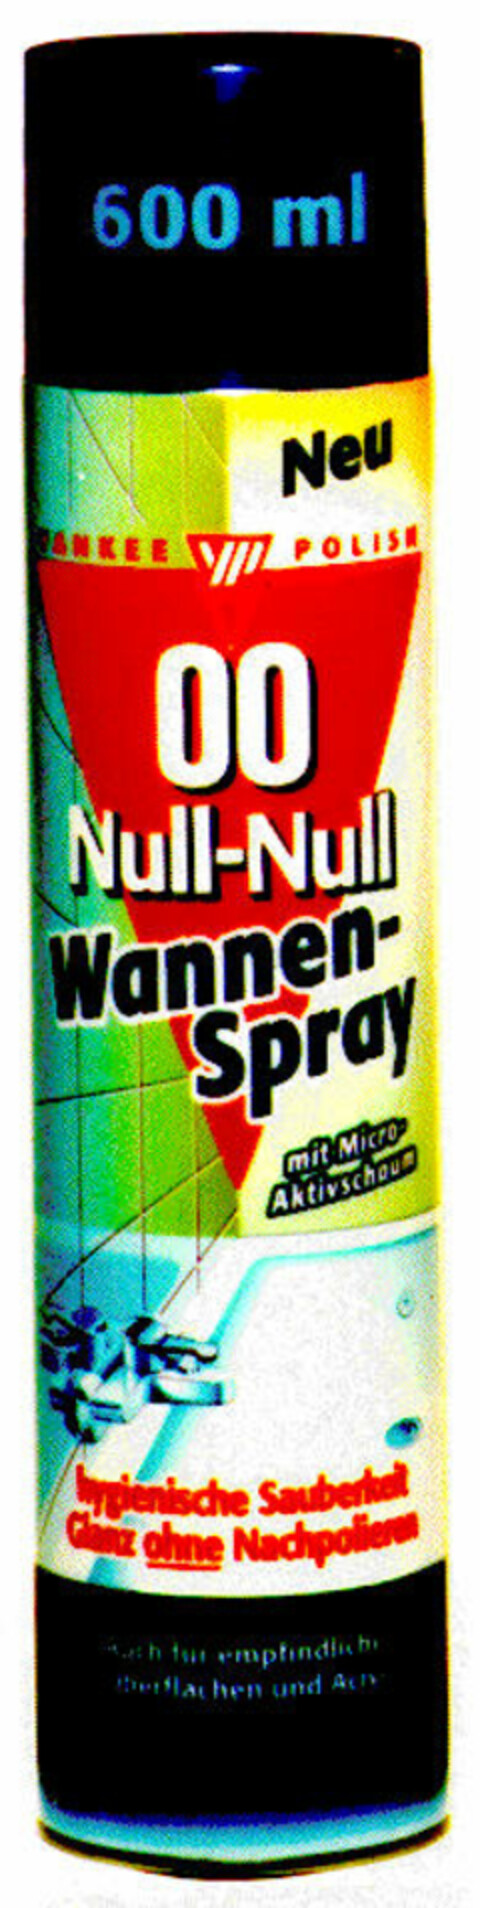 Null-Null Wannen-Spray Logo (DPMA, 28.07.1997)